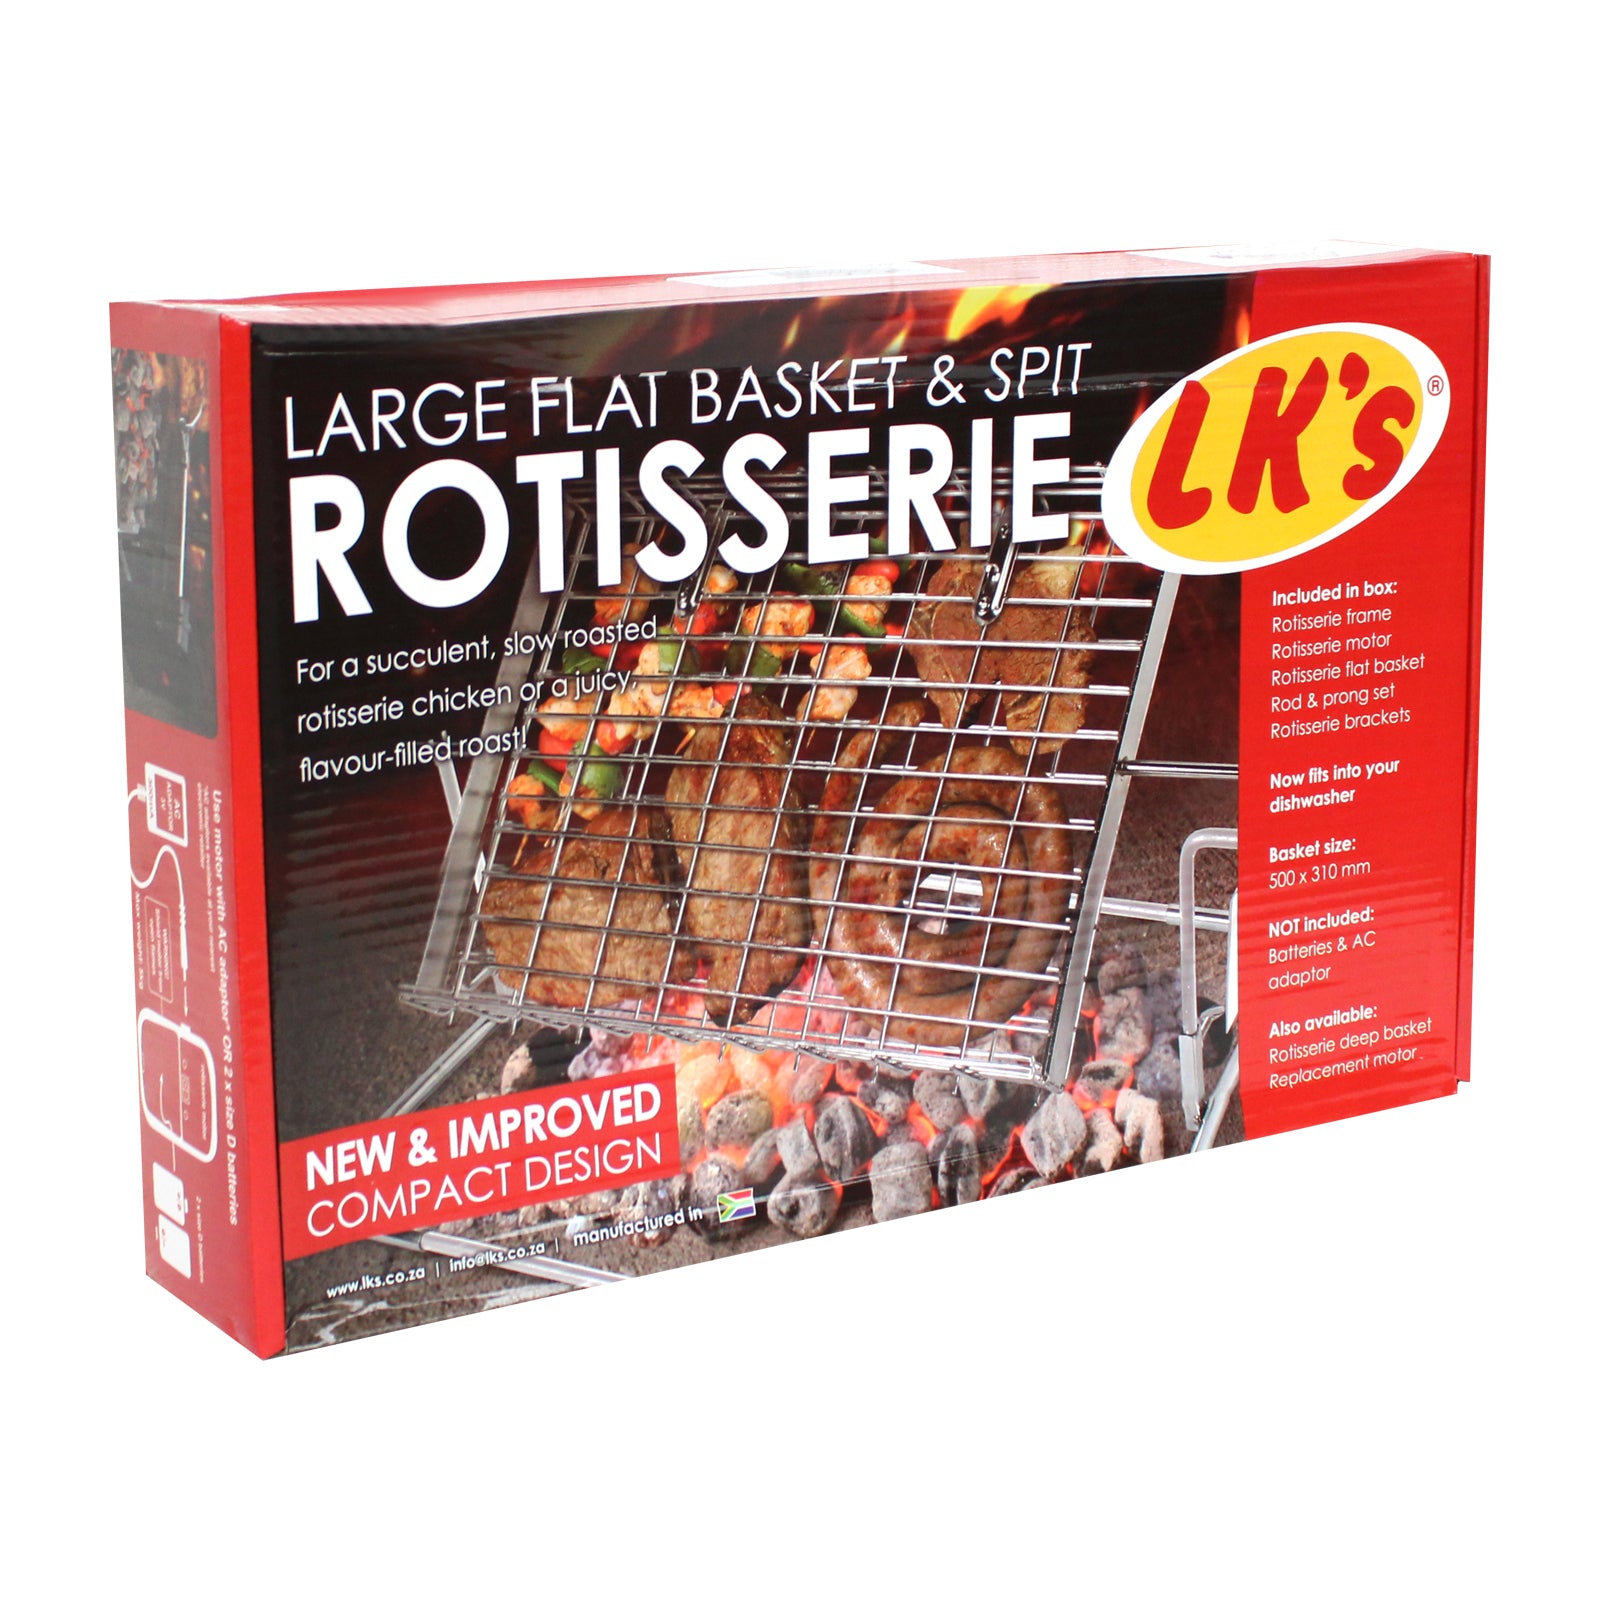 Large Flat Basket & Spit Rotisserie